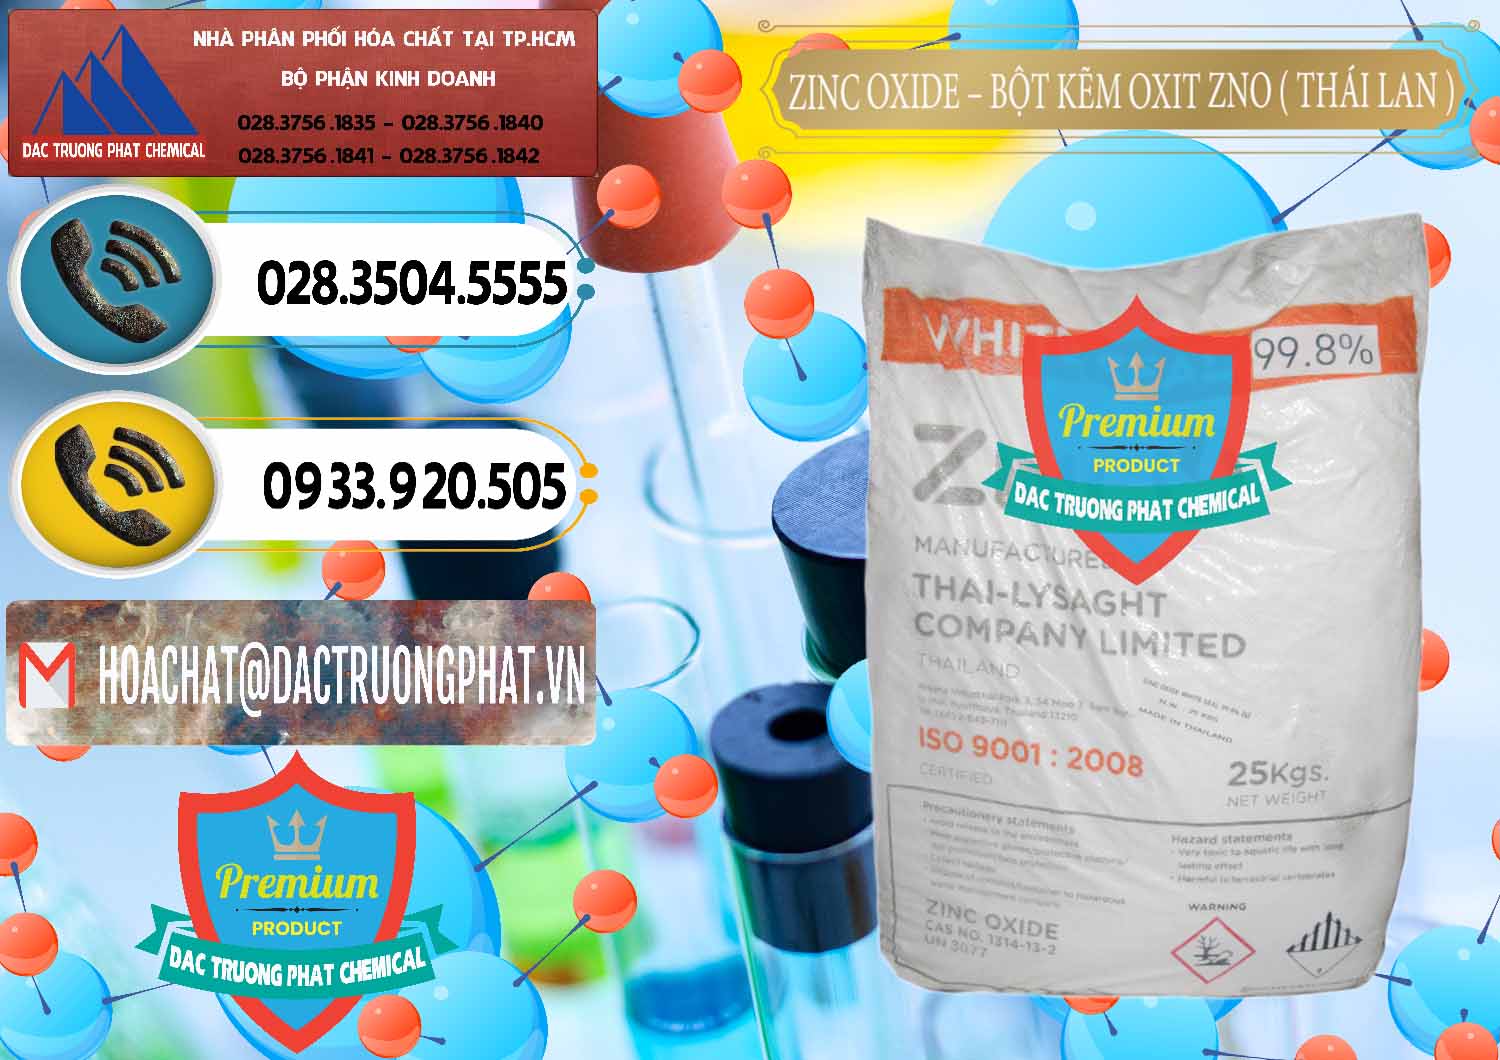 Cty chuyên bán - cung ứng Zinc Oxide - Bột Kẽm Oxit ZNO Thái Lan Thailand - 0181 - Nhà phân phối _ cung cấp hóa chất tại TP.HCM - hoachatdetnhuom.vn